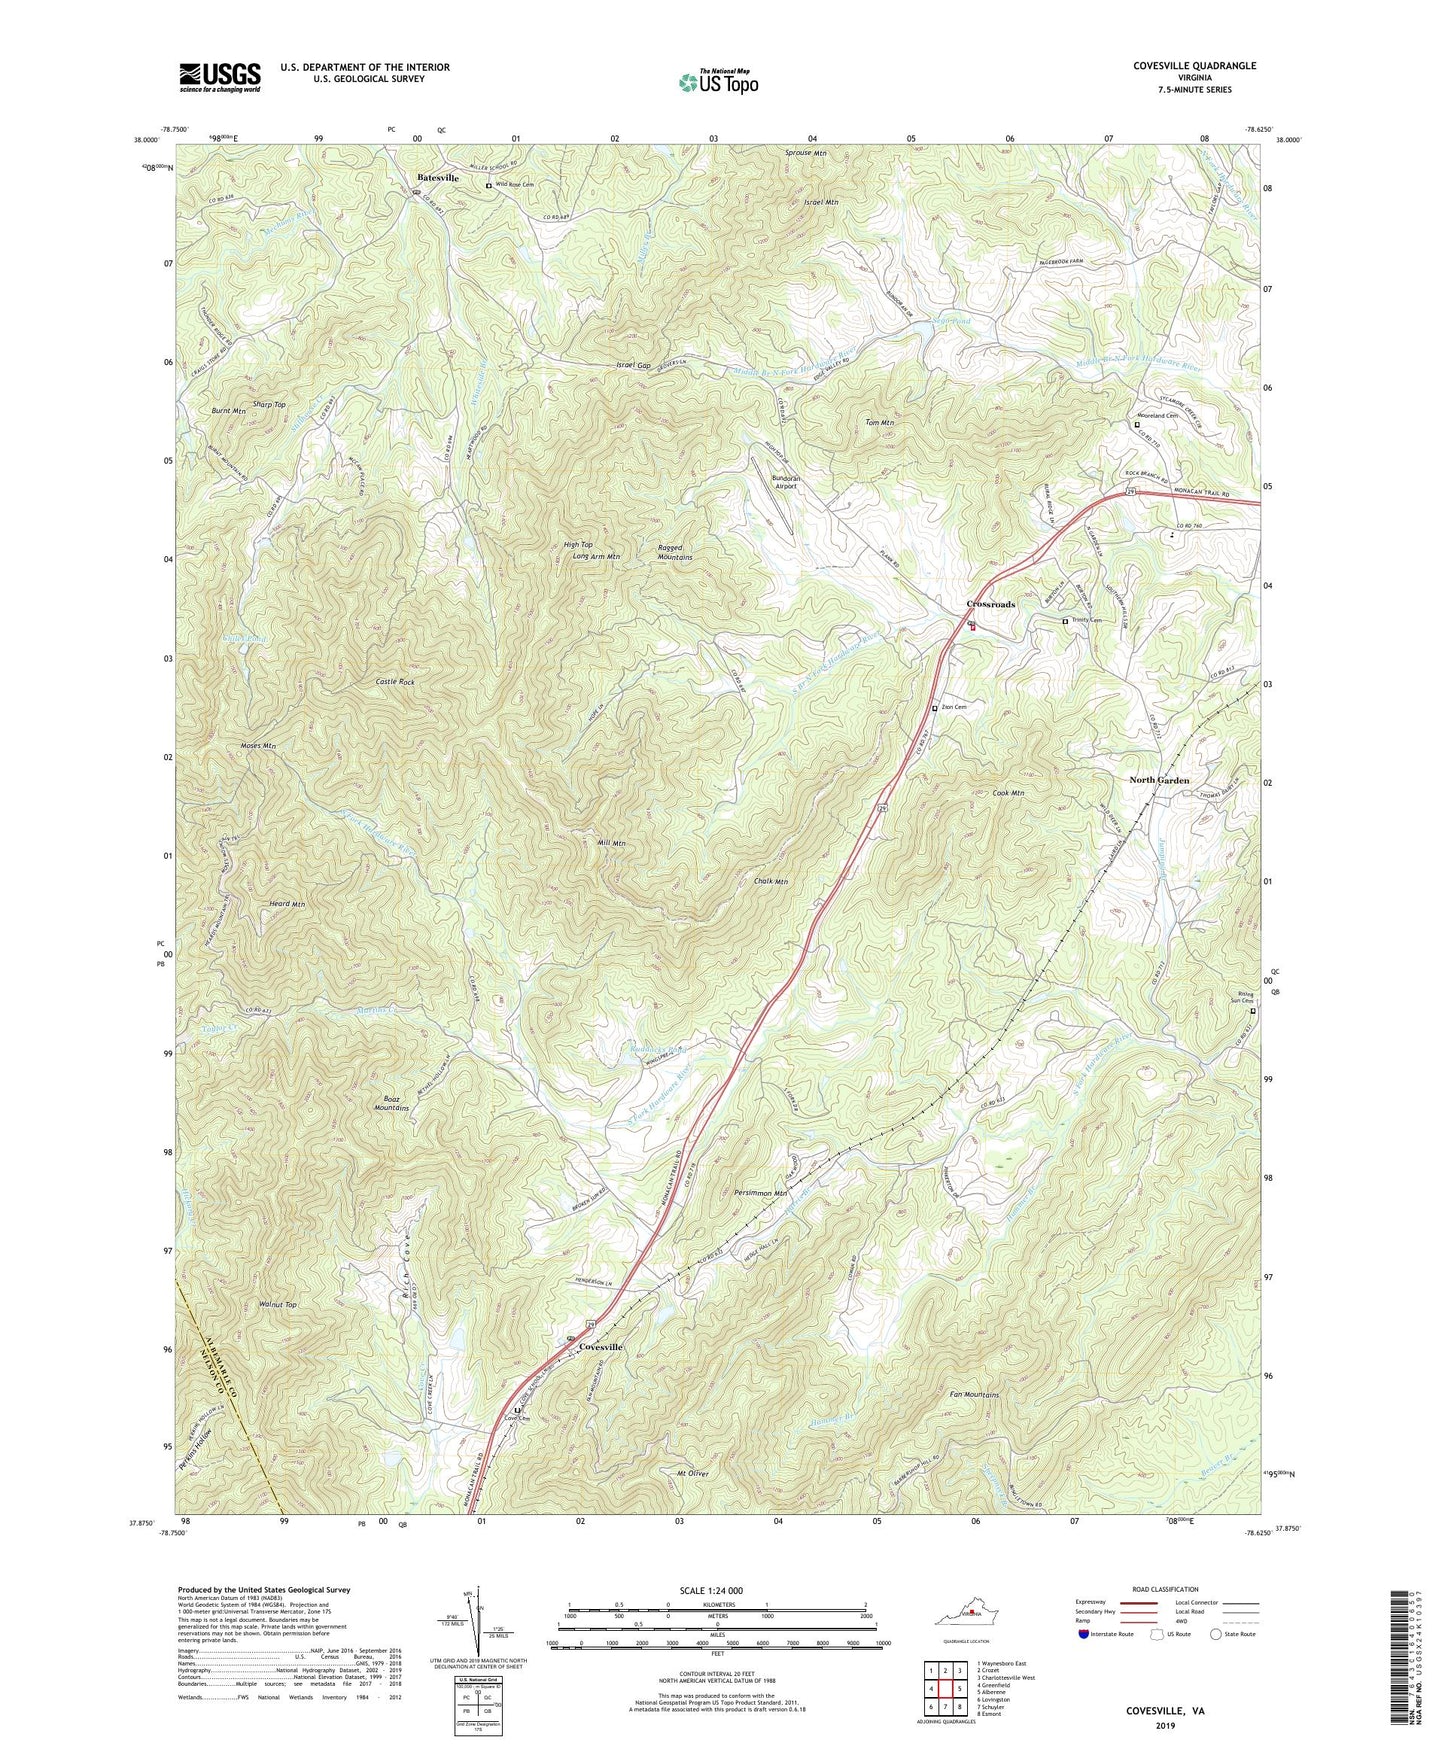 Covesville Virginia US Topo Map Image